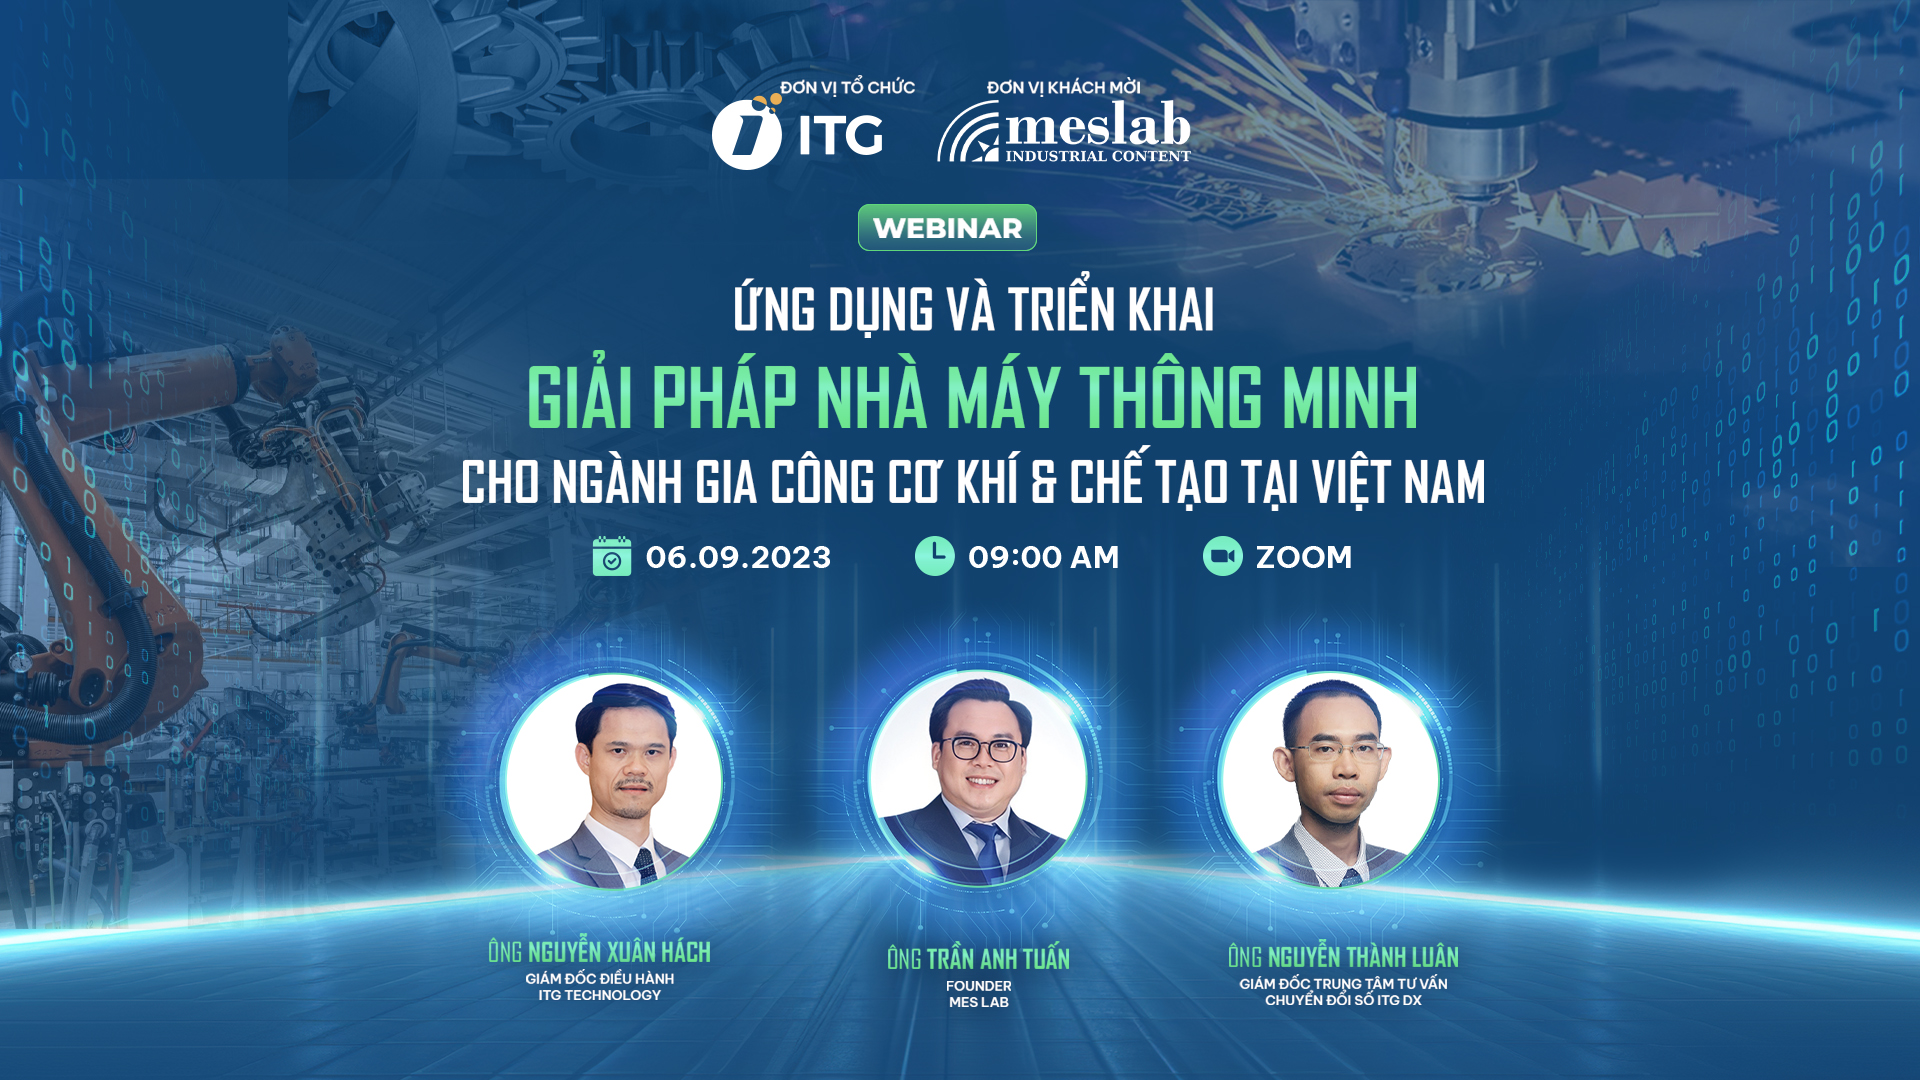 Banner Webinar Co khi 1920x1080 2 - Mở cổng đăng ký Webinar “Ứng dụng và triển khai giải pháp nhà máy thông minh cho ngành Gia công Cơ khí & Chế tạo tại Việt Nam”